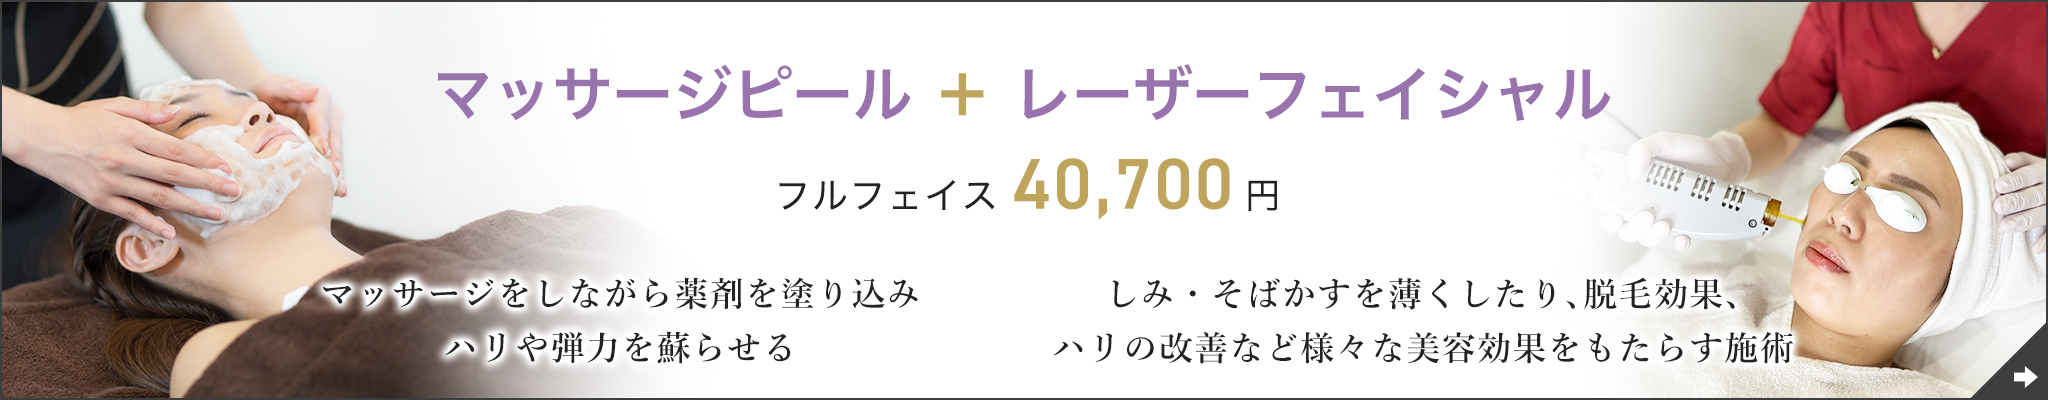 マッサージピール+フェイシャル フルフェイス 40,700円